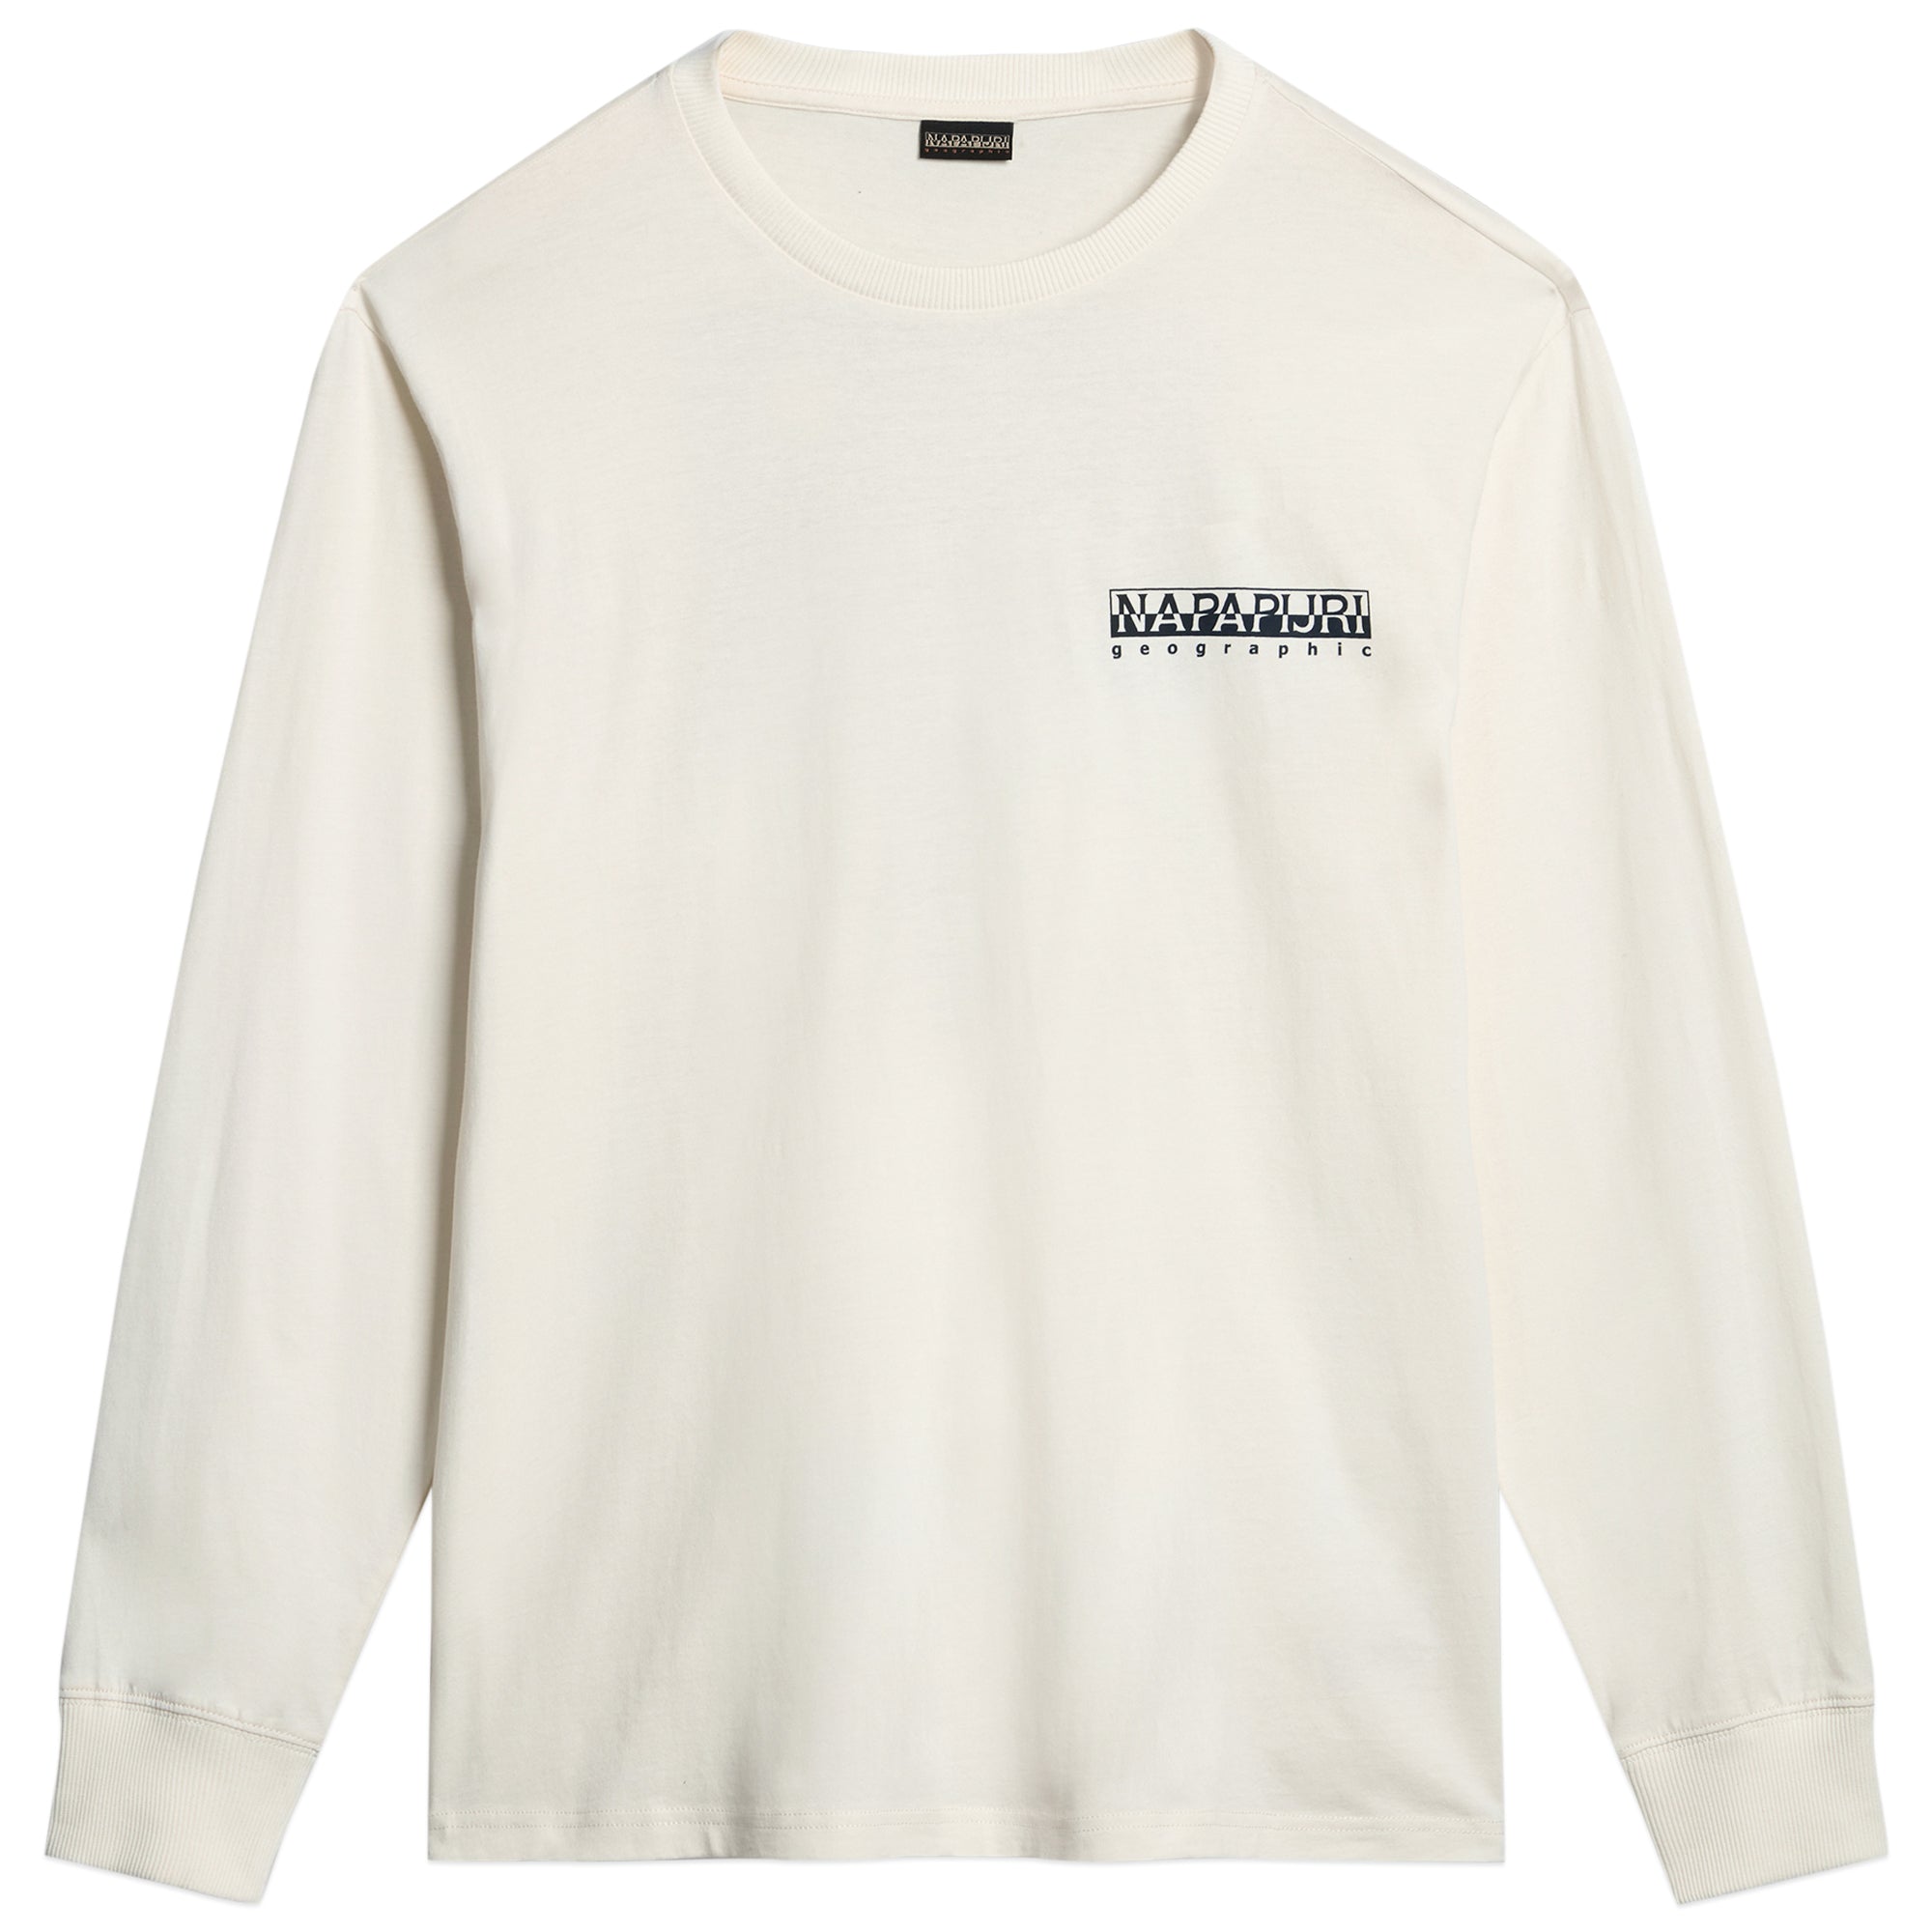 Napapijri S-Telemark Long Sleeve T-Shirt - White Whisper